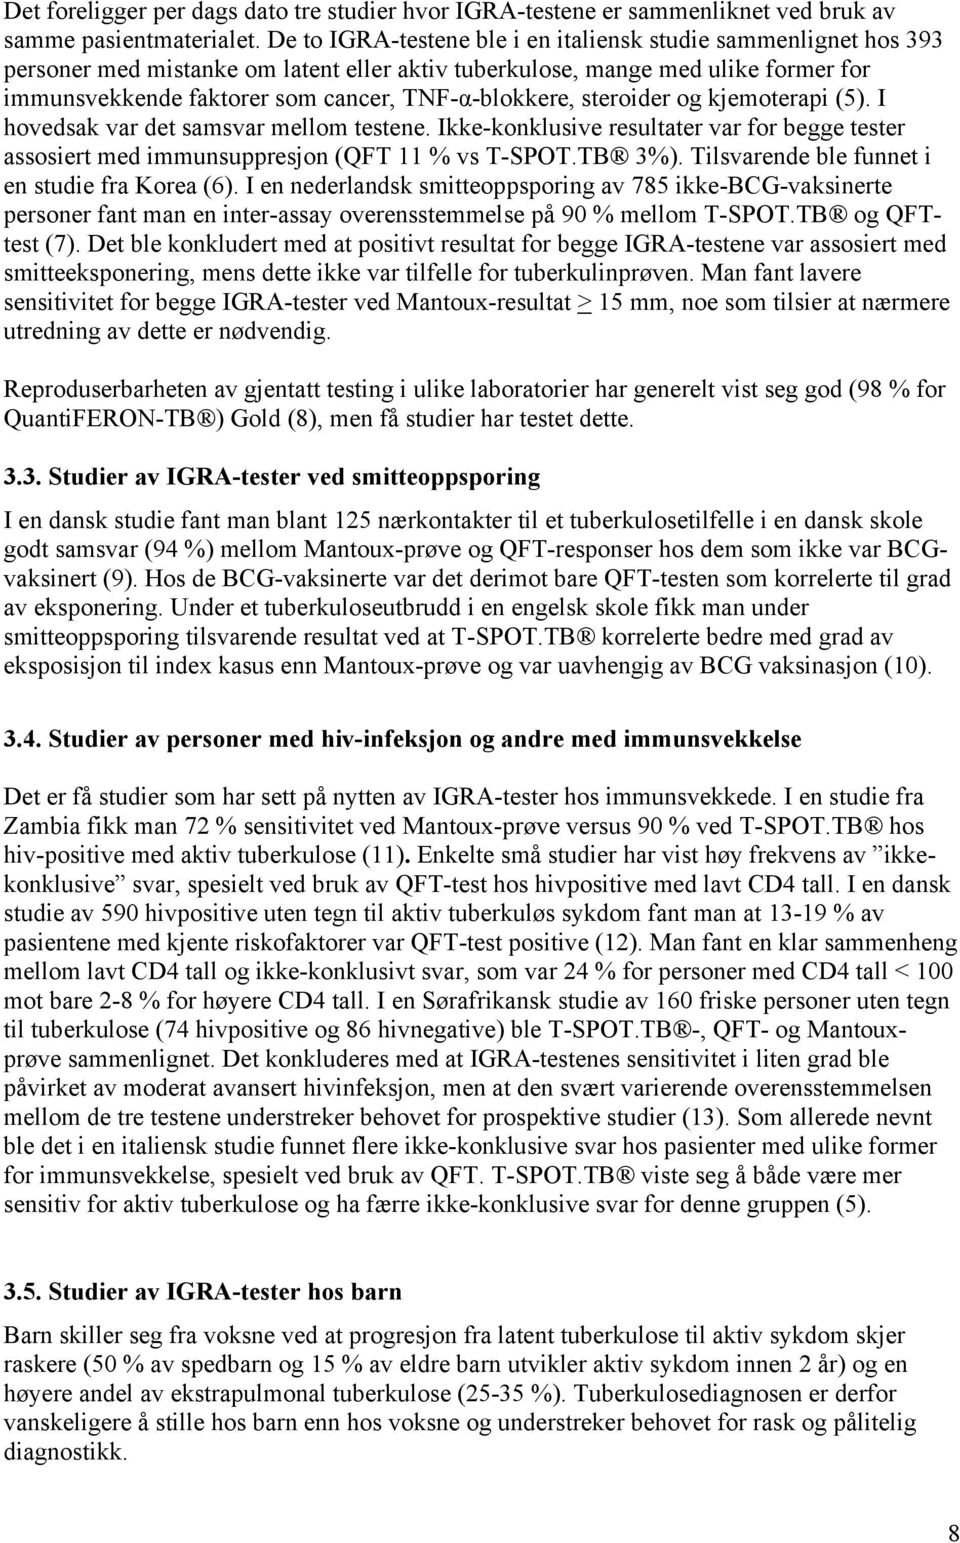 TNF-α-blokkere, steroider og kjemoterapi (5). I hovedsak var det samsvar mellom testene. Ikke-konklusive resultater var for begge tester assosiert med immunsuppresjon (QFT 11 % vs T-SPOT.TB 3%).